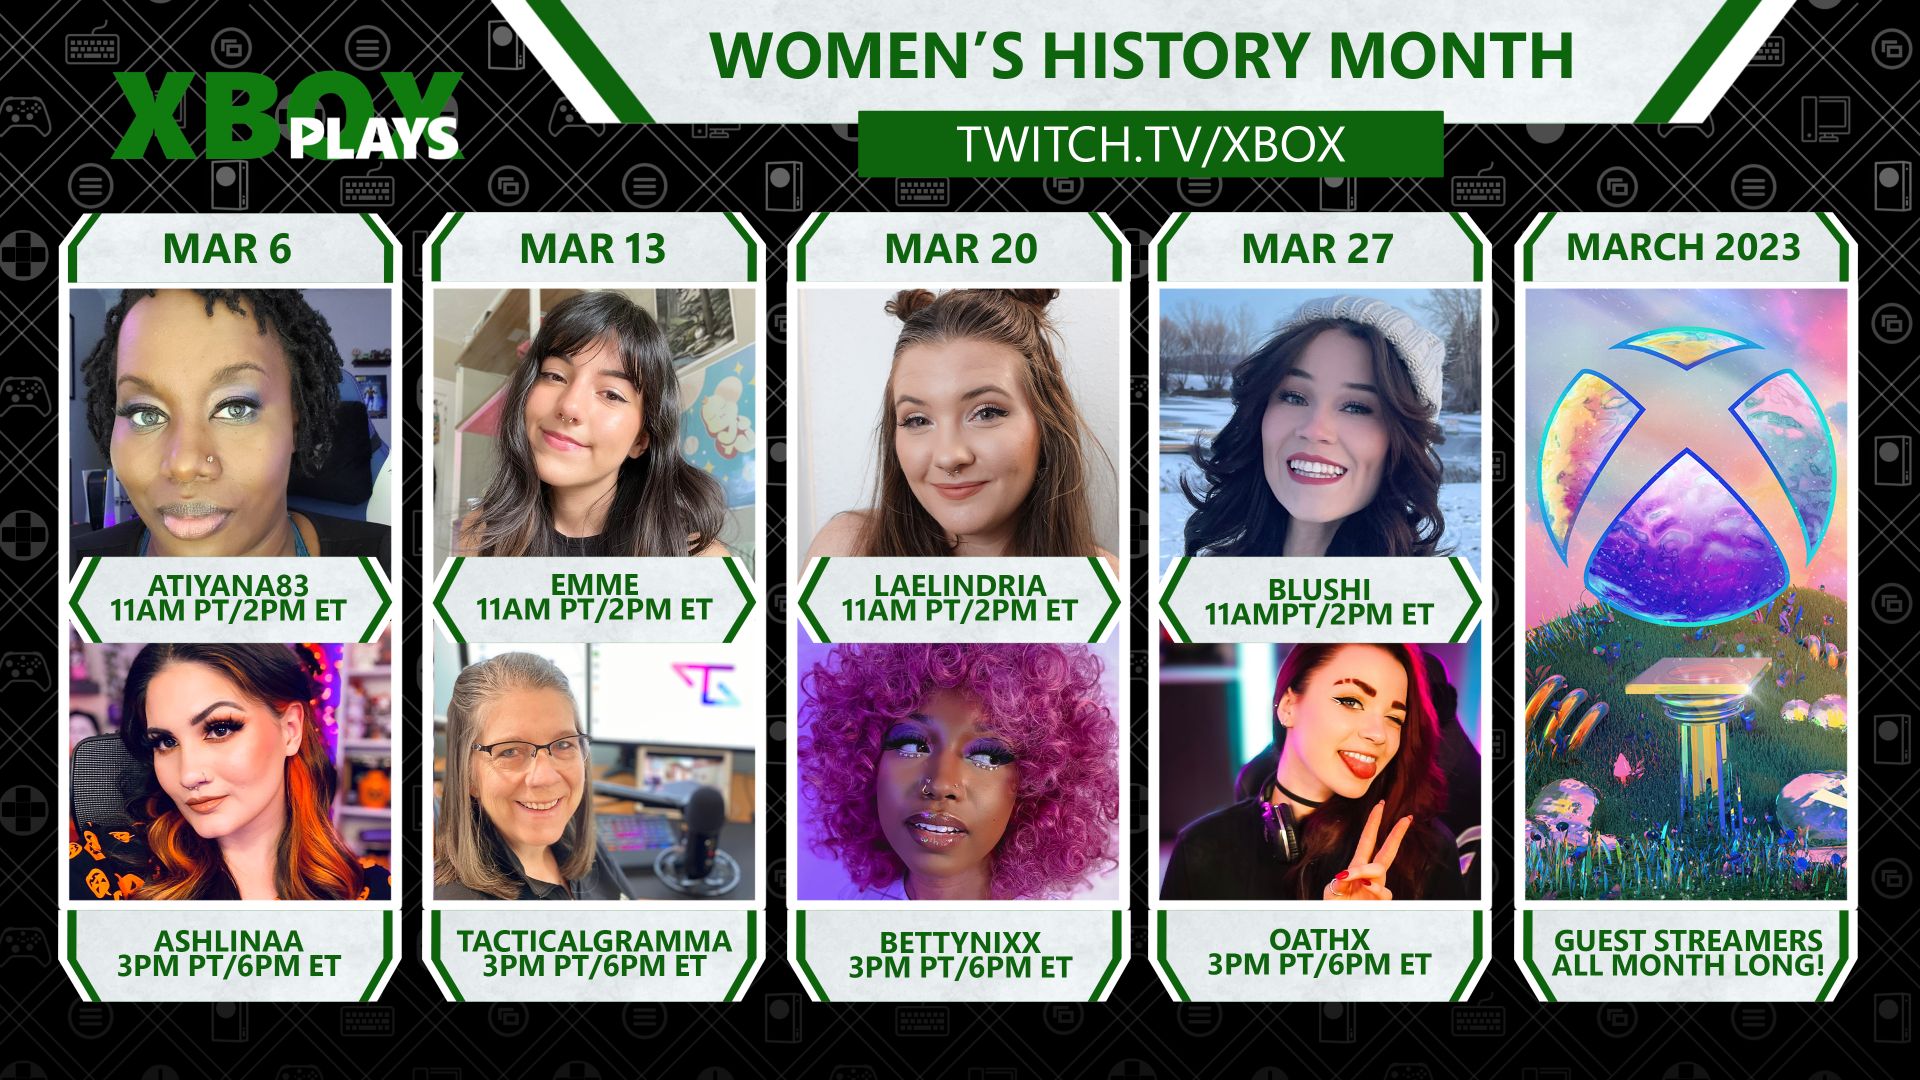 Une image de compilation mettant en vedette huit joueuses sur Xbox Plays for Women's History Month sur twitch.tv/xbox.